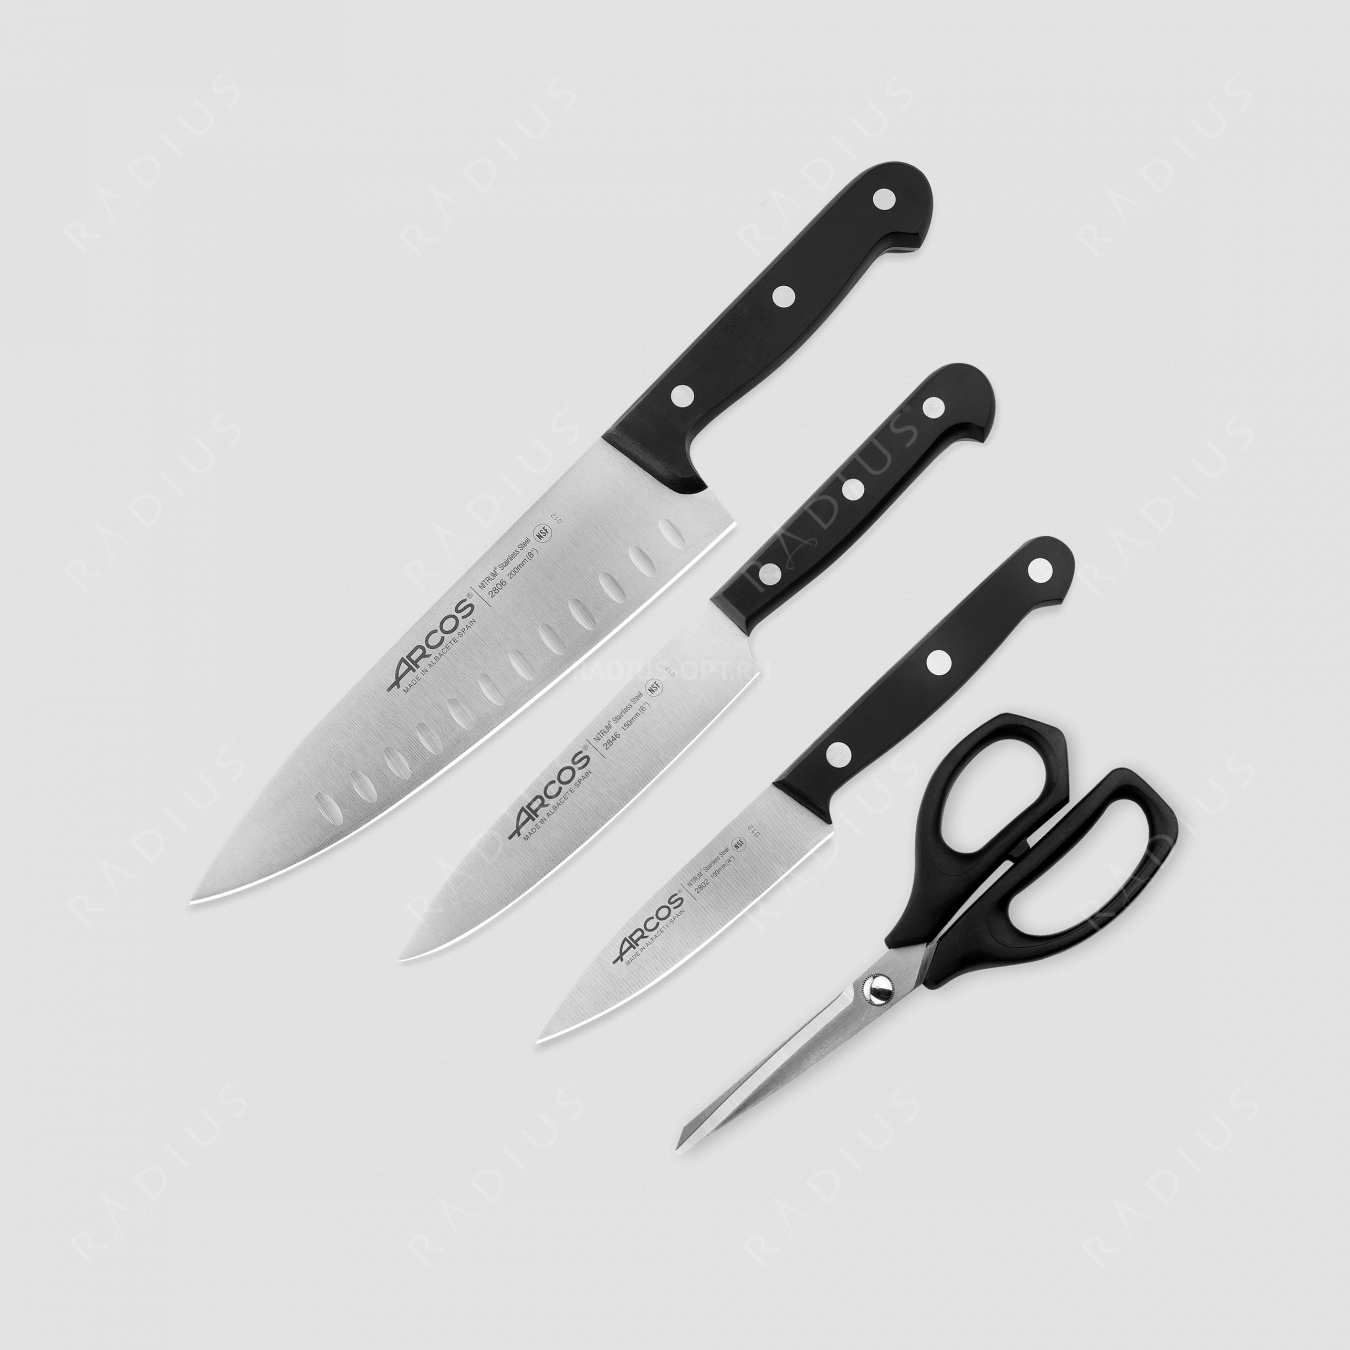 Набор ножей 3 шт. (10 см, 15 см, 20 см), + ножницы в подарок, упаковка-коробка, серия Universal, ARCOS, Испания